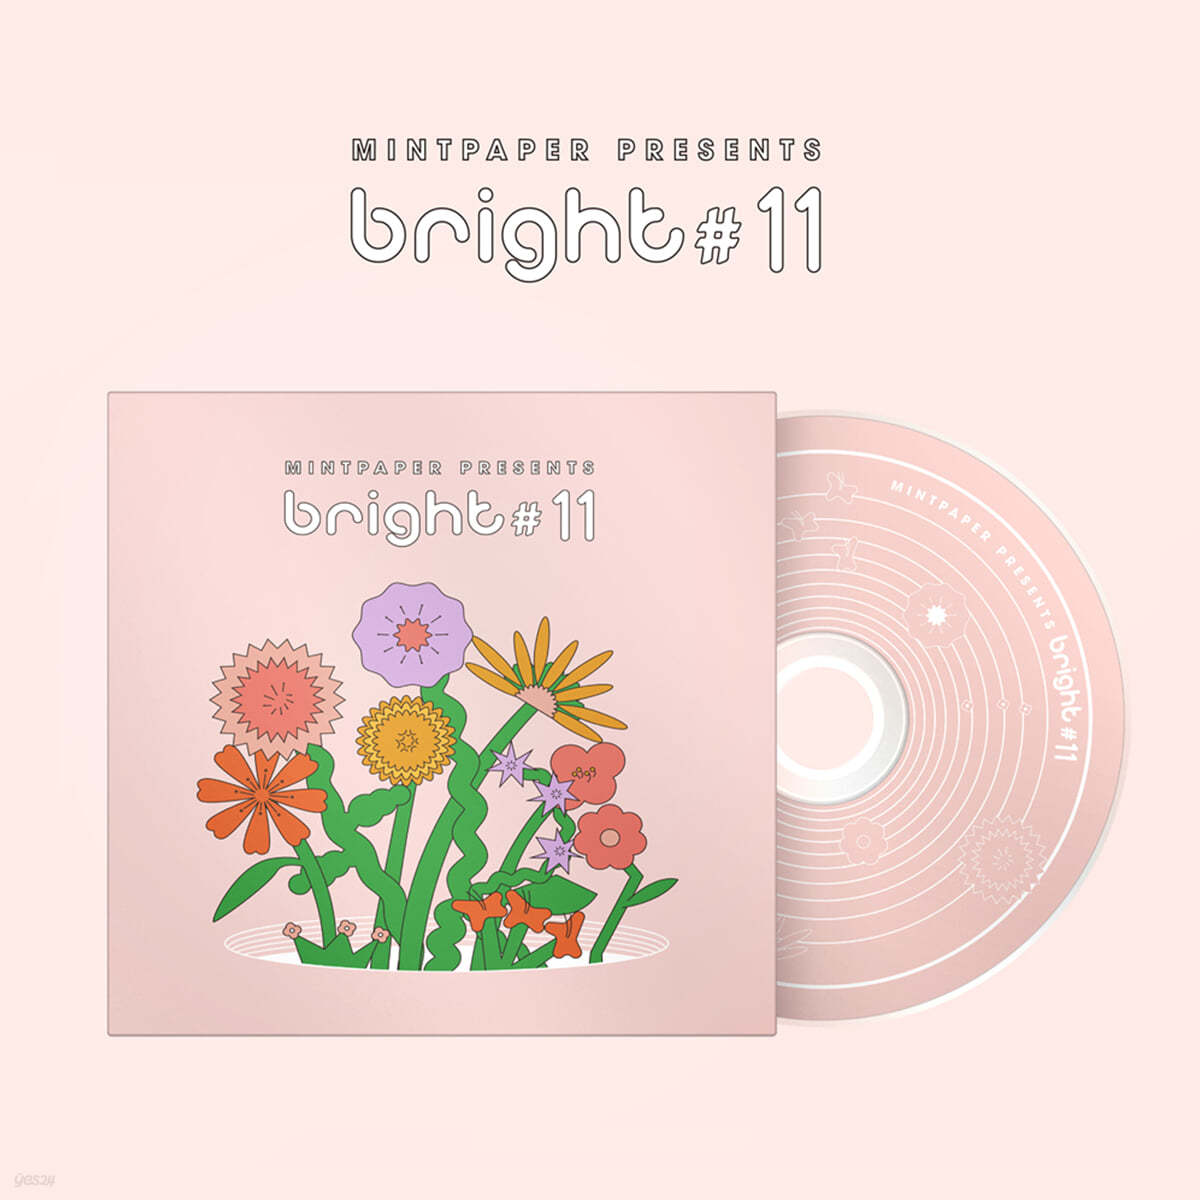 민트 페이퍼 (Mint Paper) presents bright #11